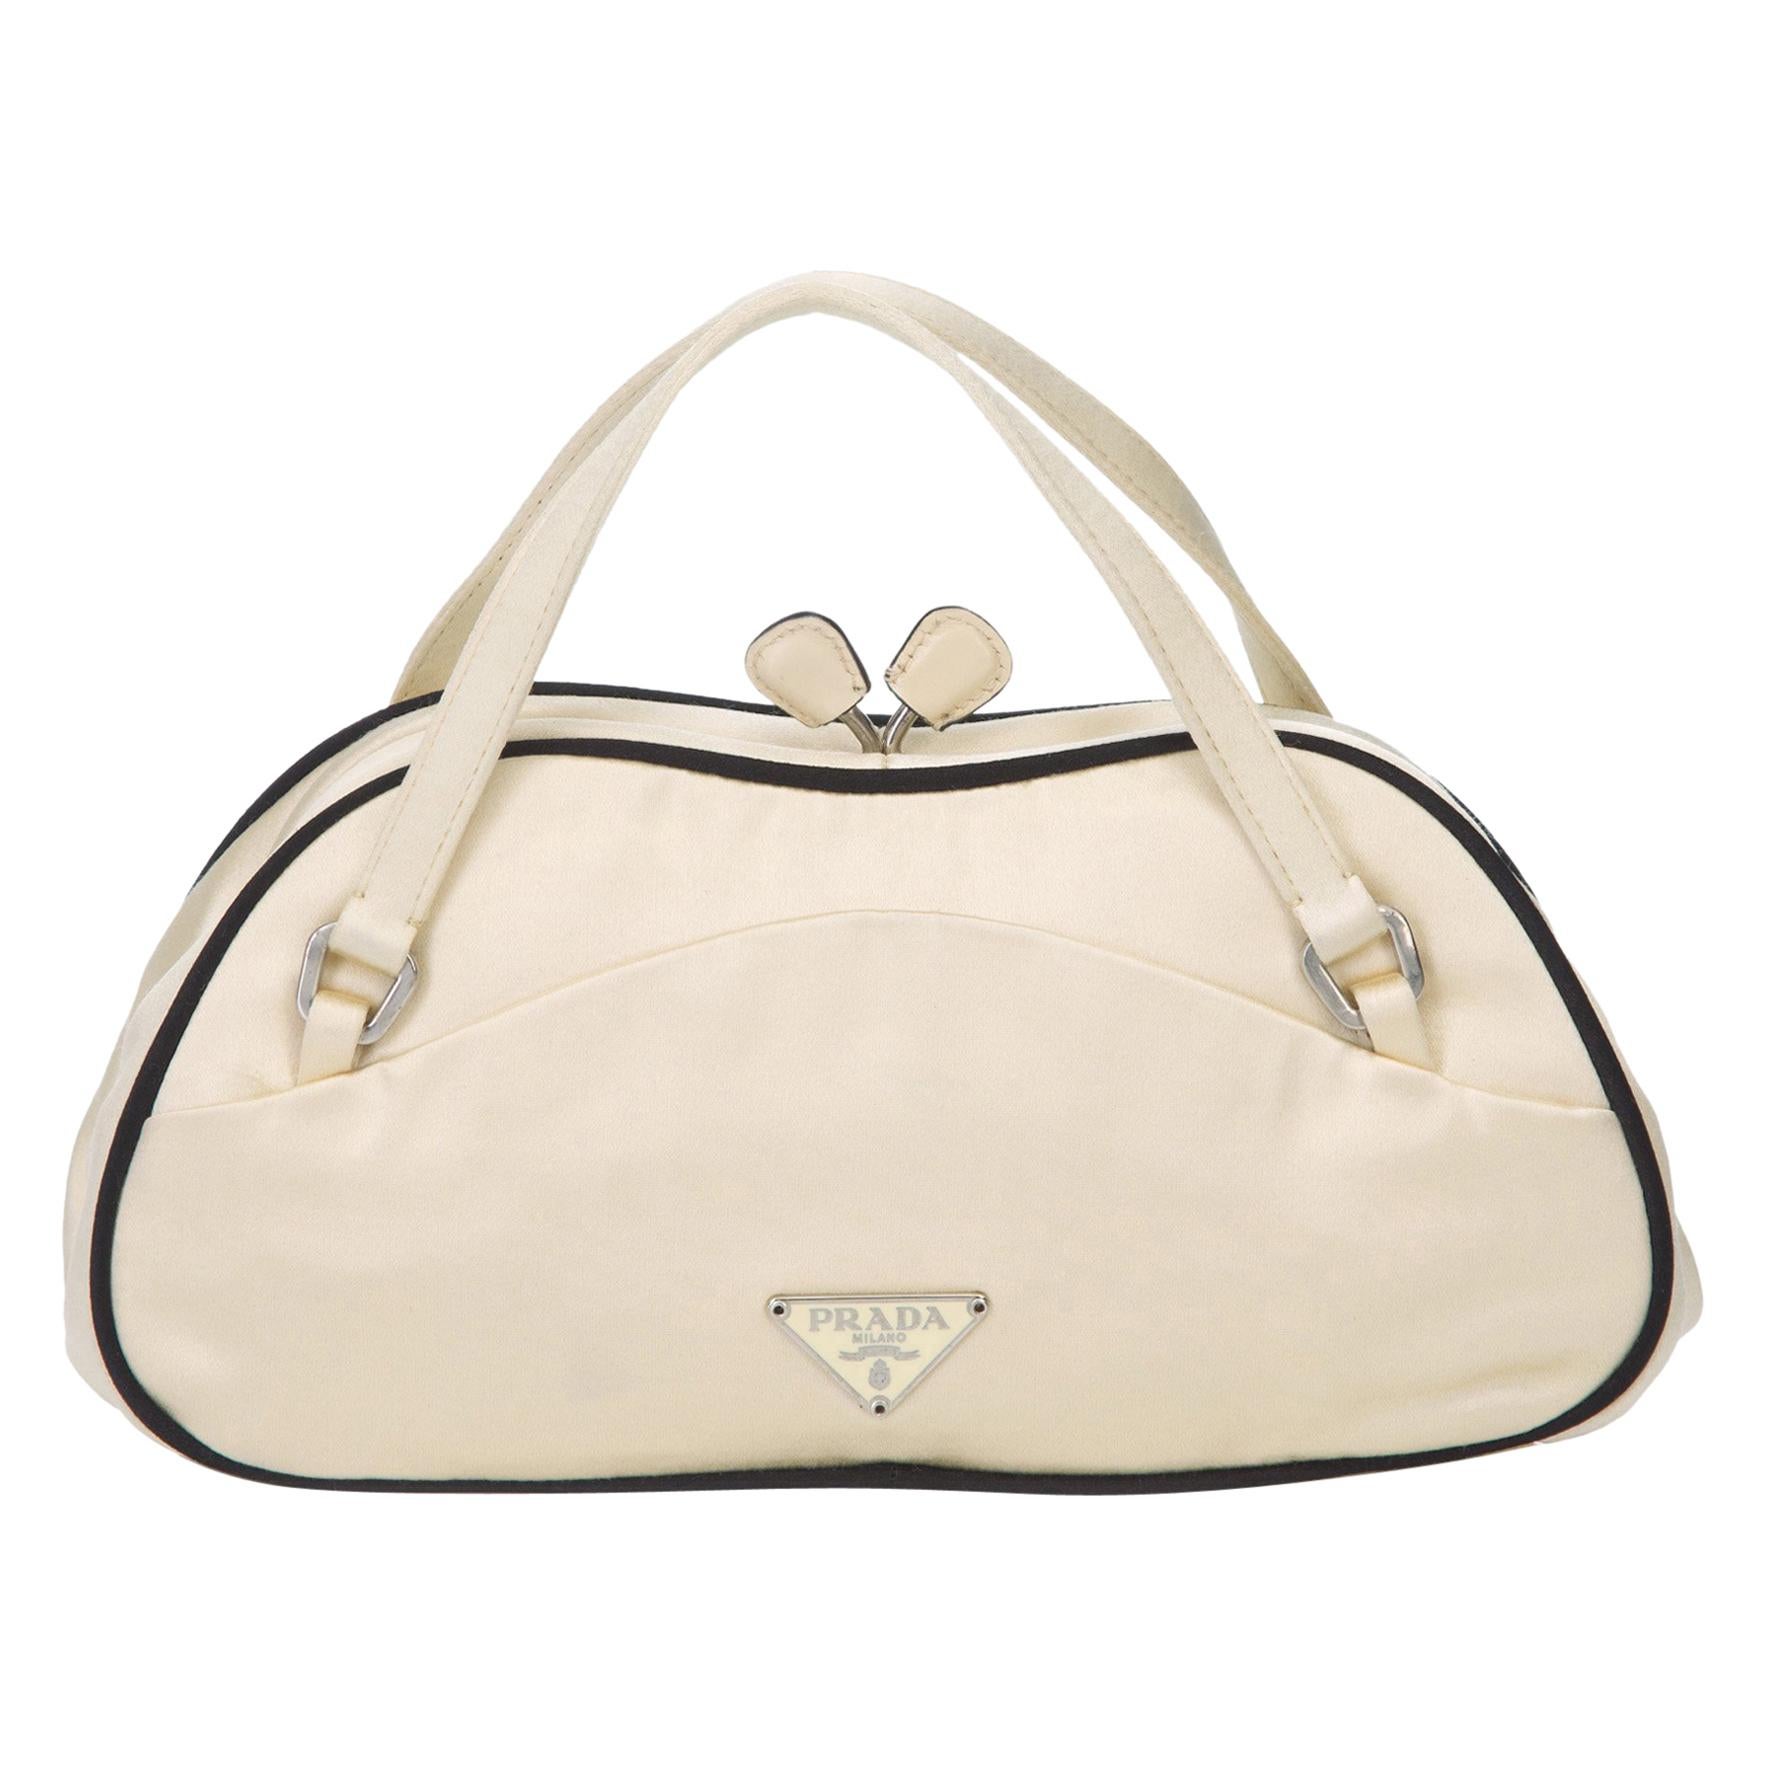 Prada White Satin Handbag